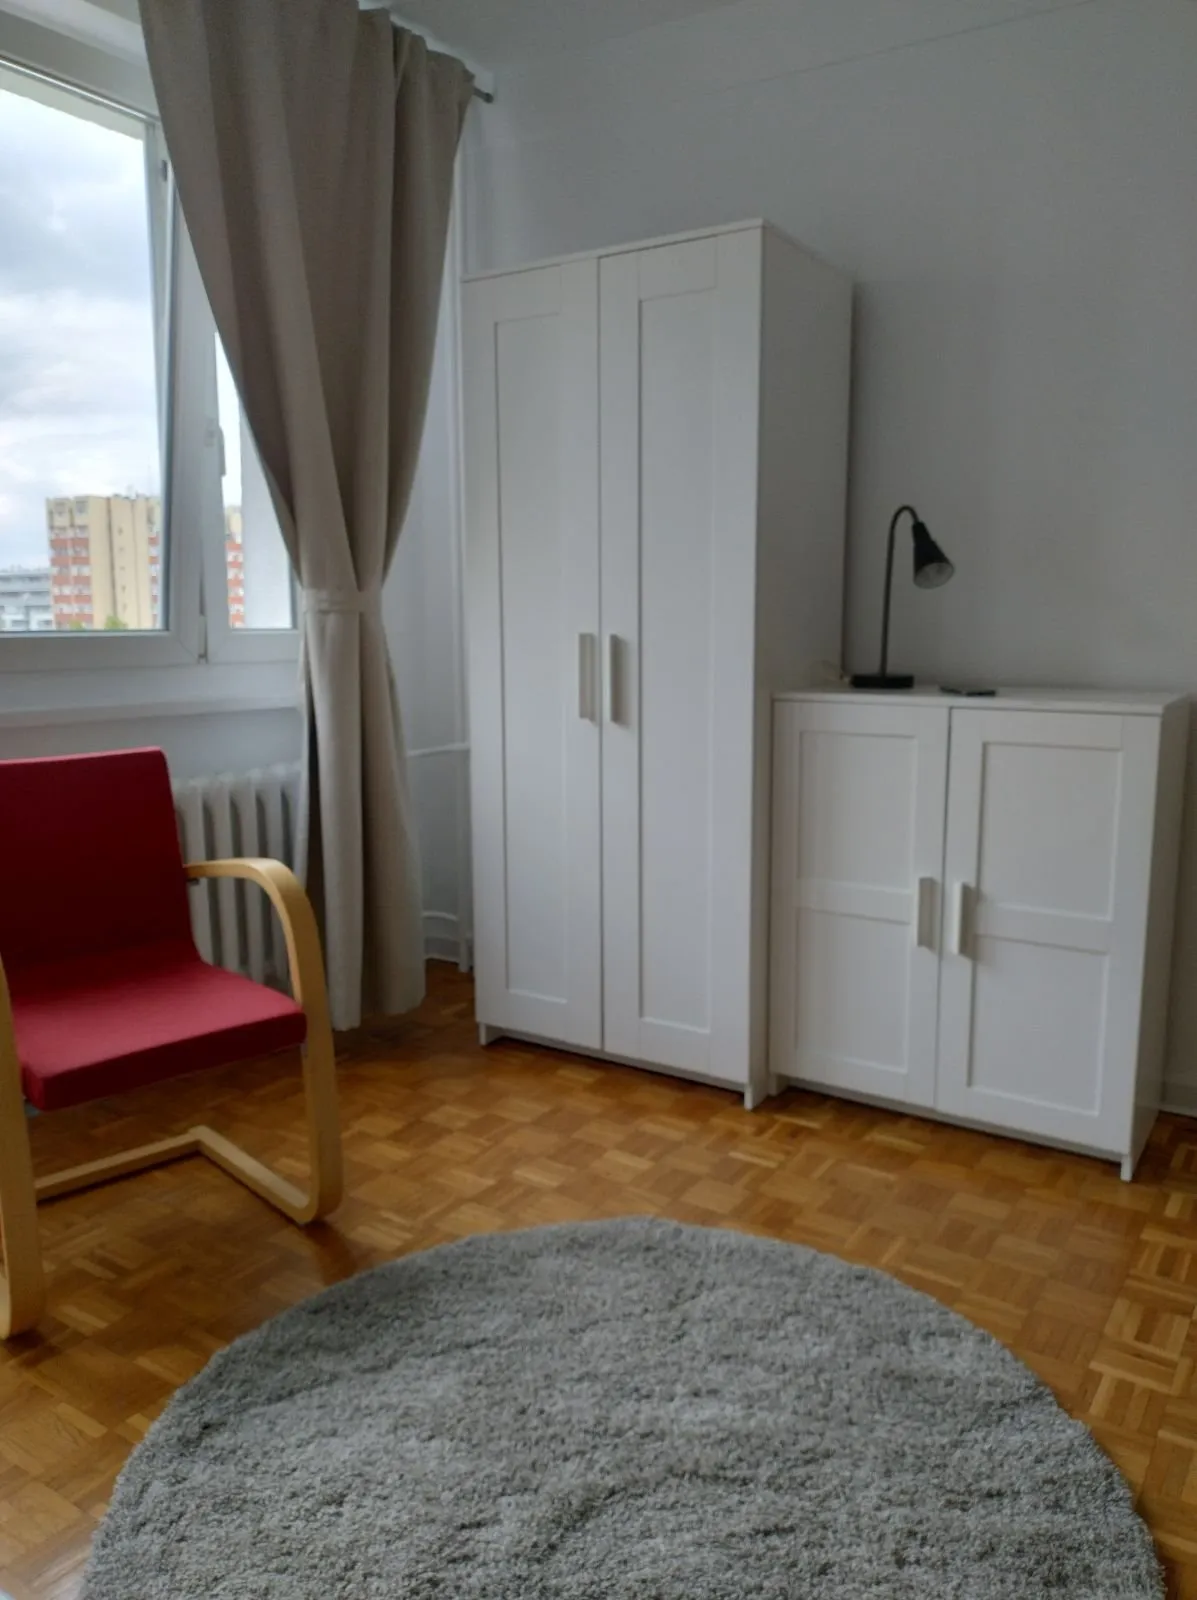 Wynajmę mieszkanie dwupokojowe: Warszawa Mokotów Górny Mokotów , ulica Malawskiego, 40 m2, 2700 PLN, 2 pokoje - Domiporta.pl